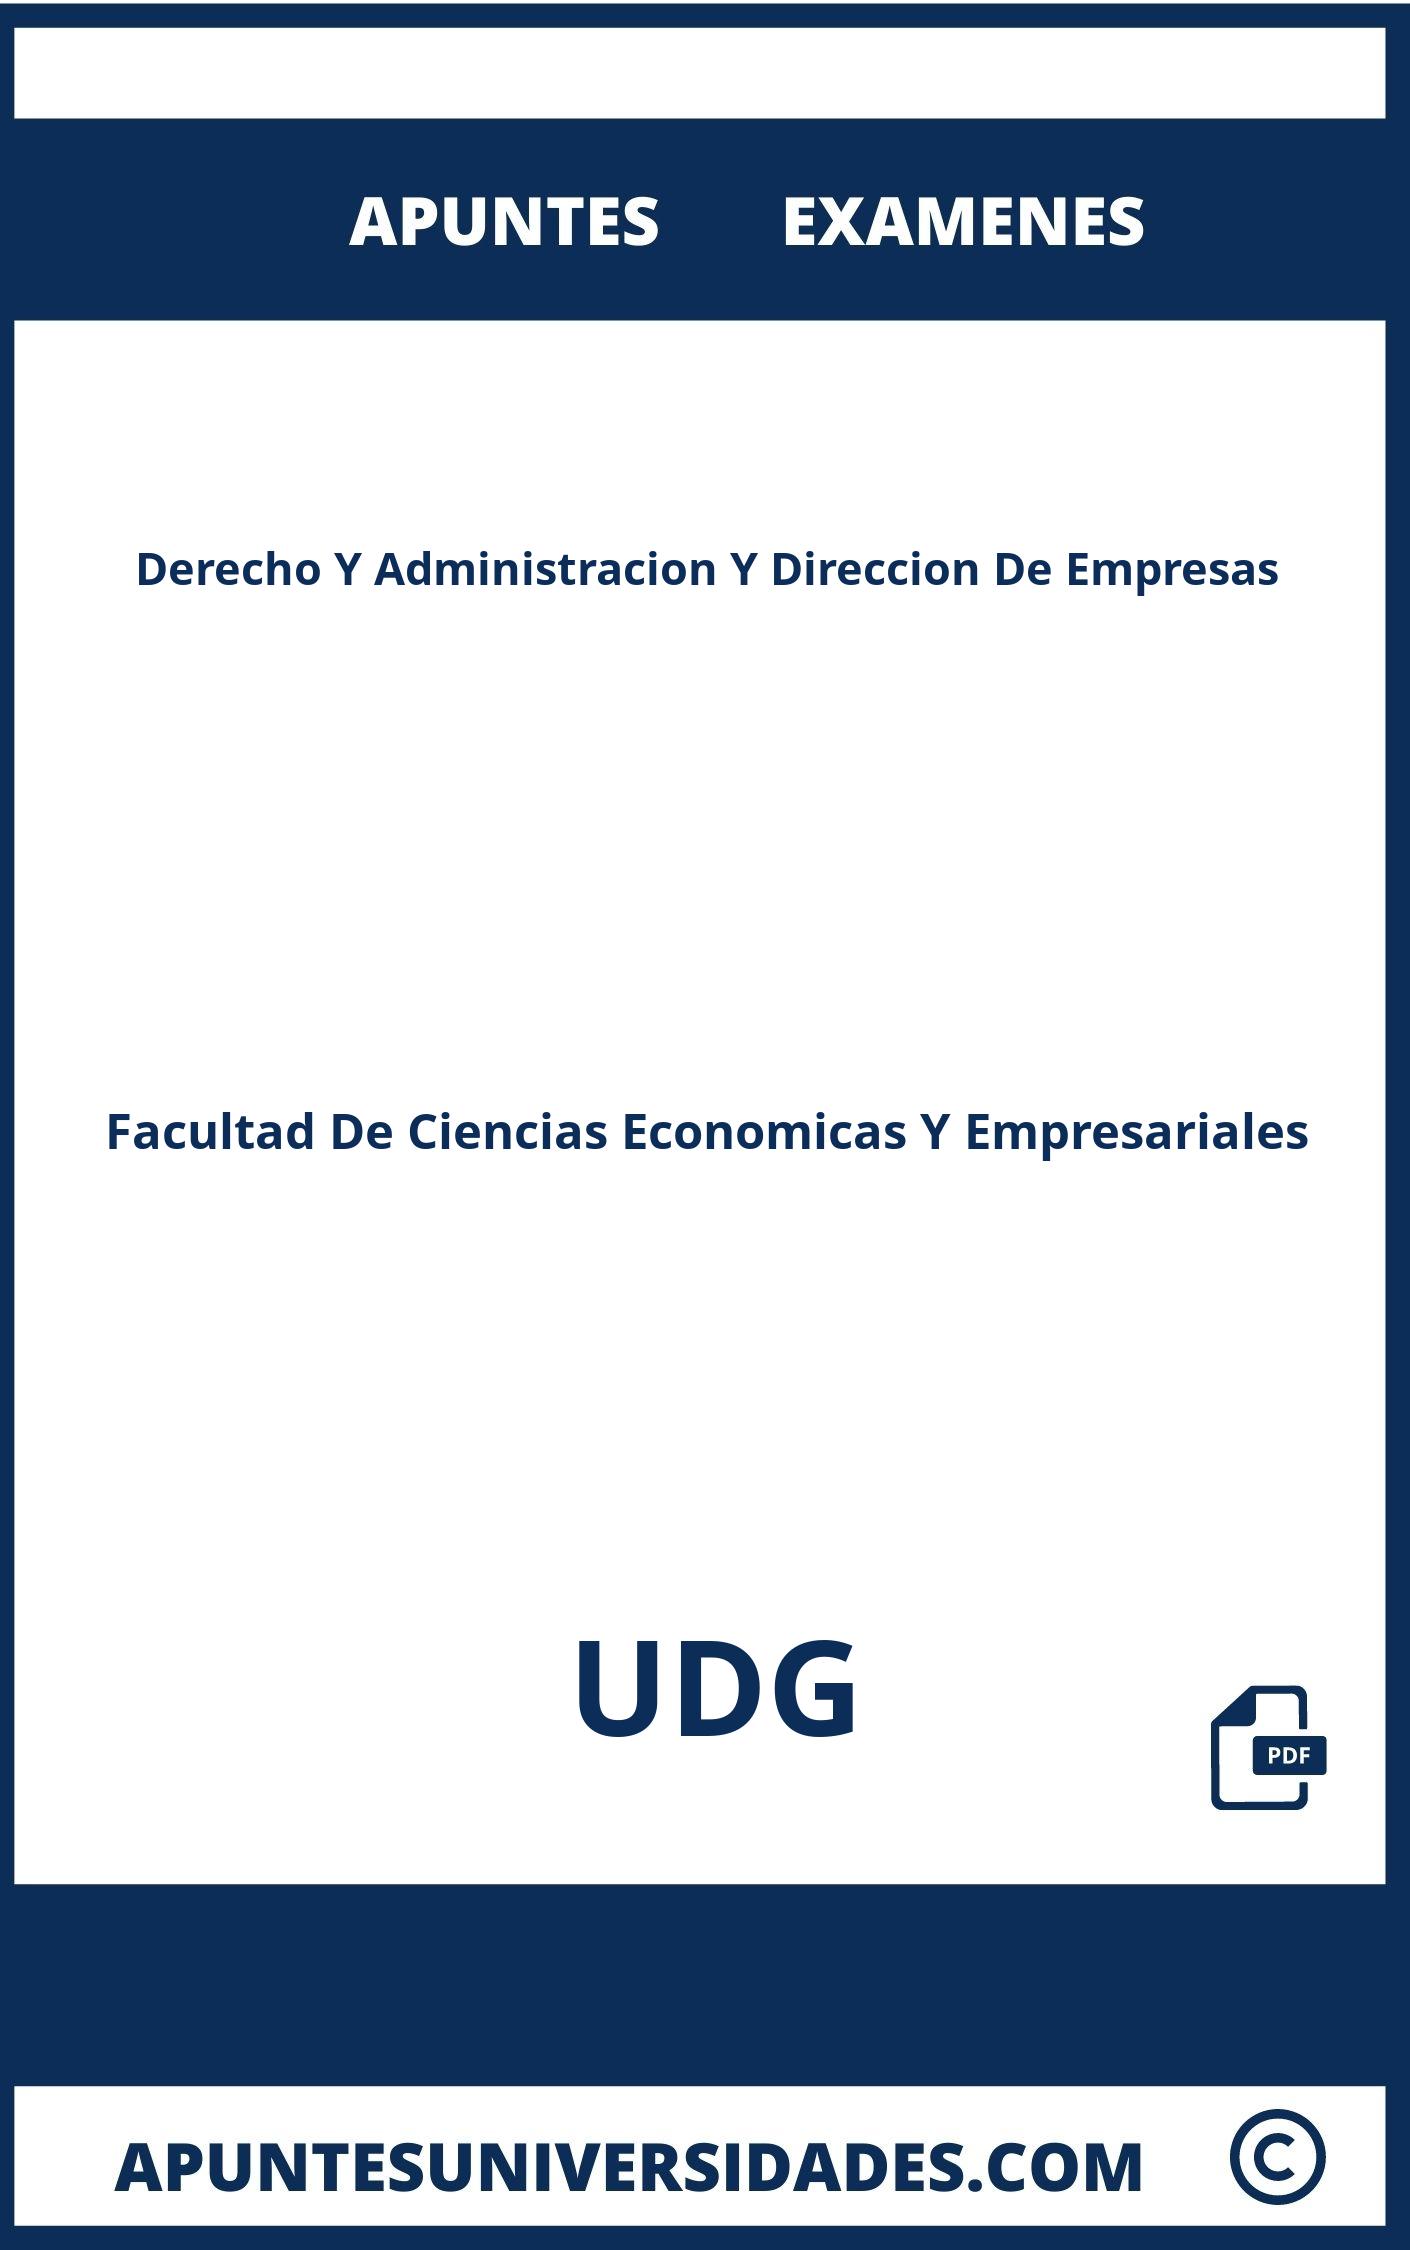 Apuntes y Examenes Derecho Y Administracion Y Direccion De Empresas UDG